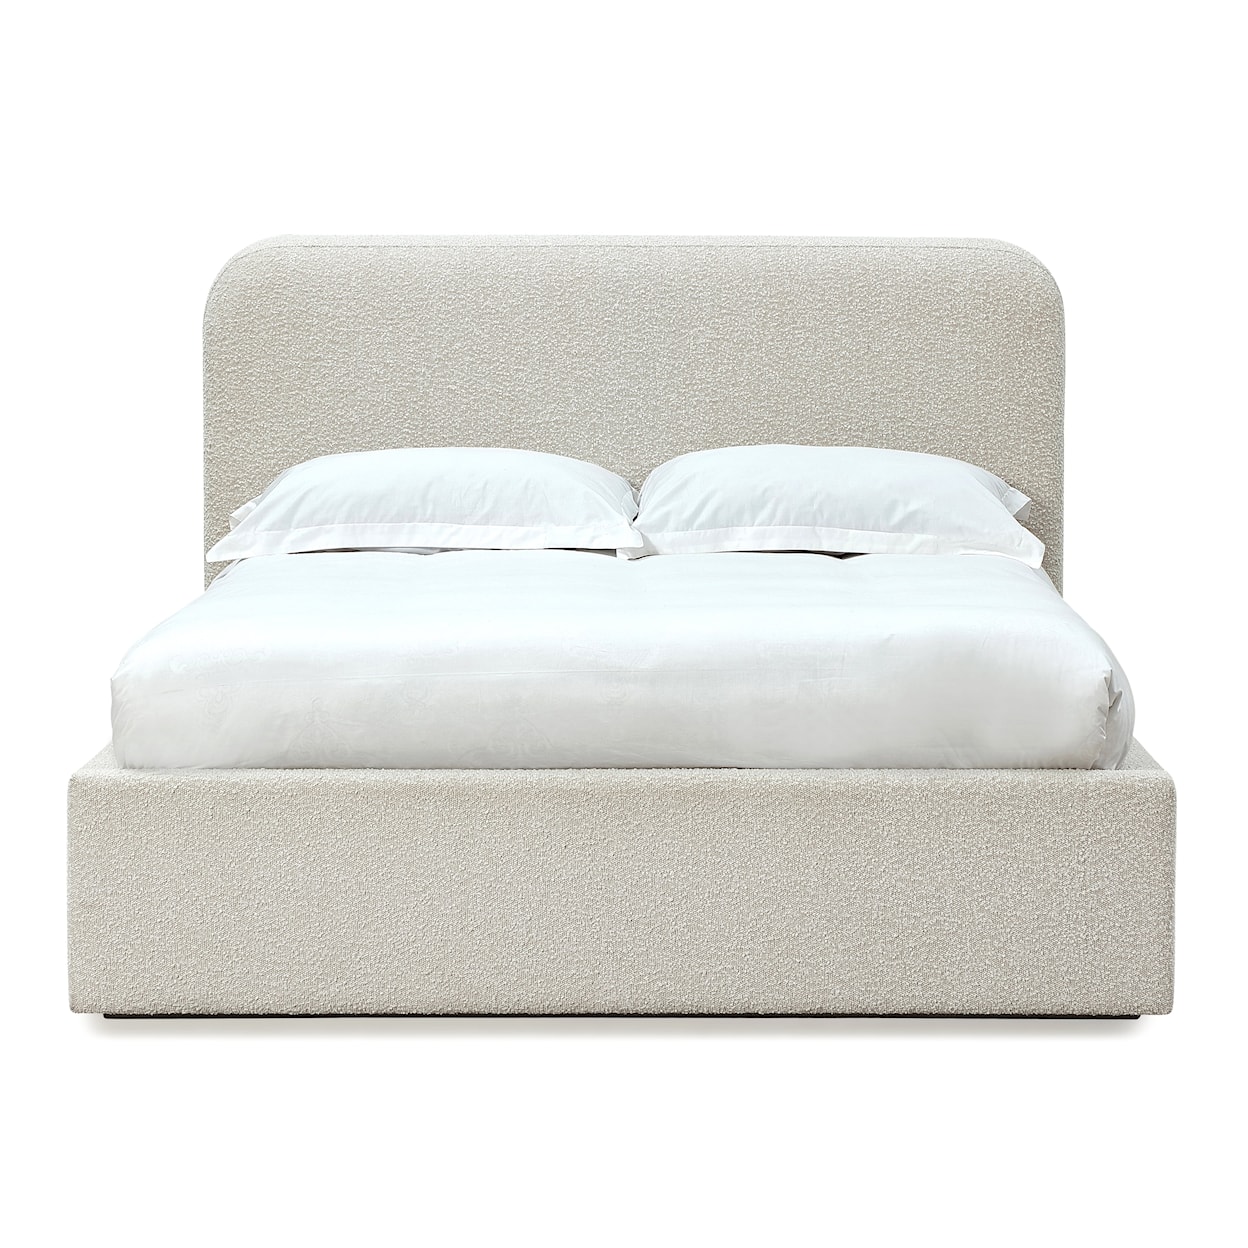 Modus International Off-White Full Upholstered Platform Bed